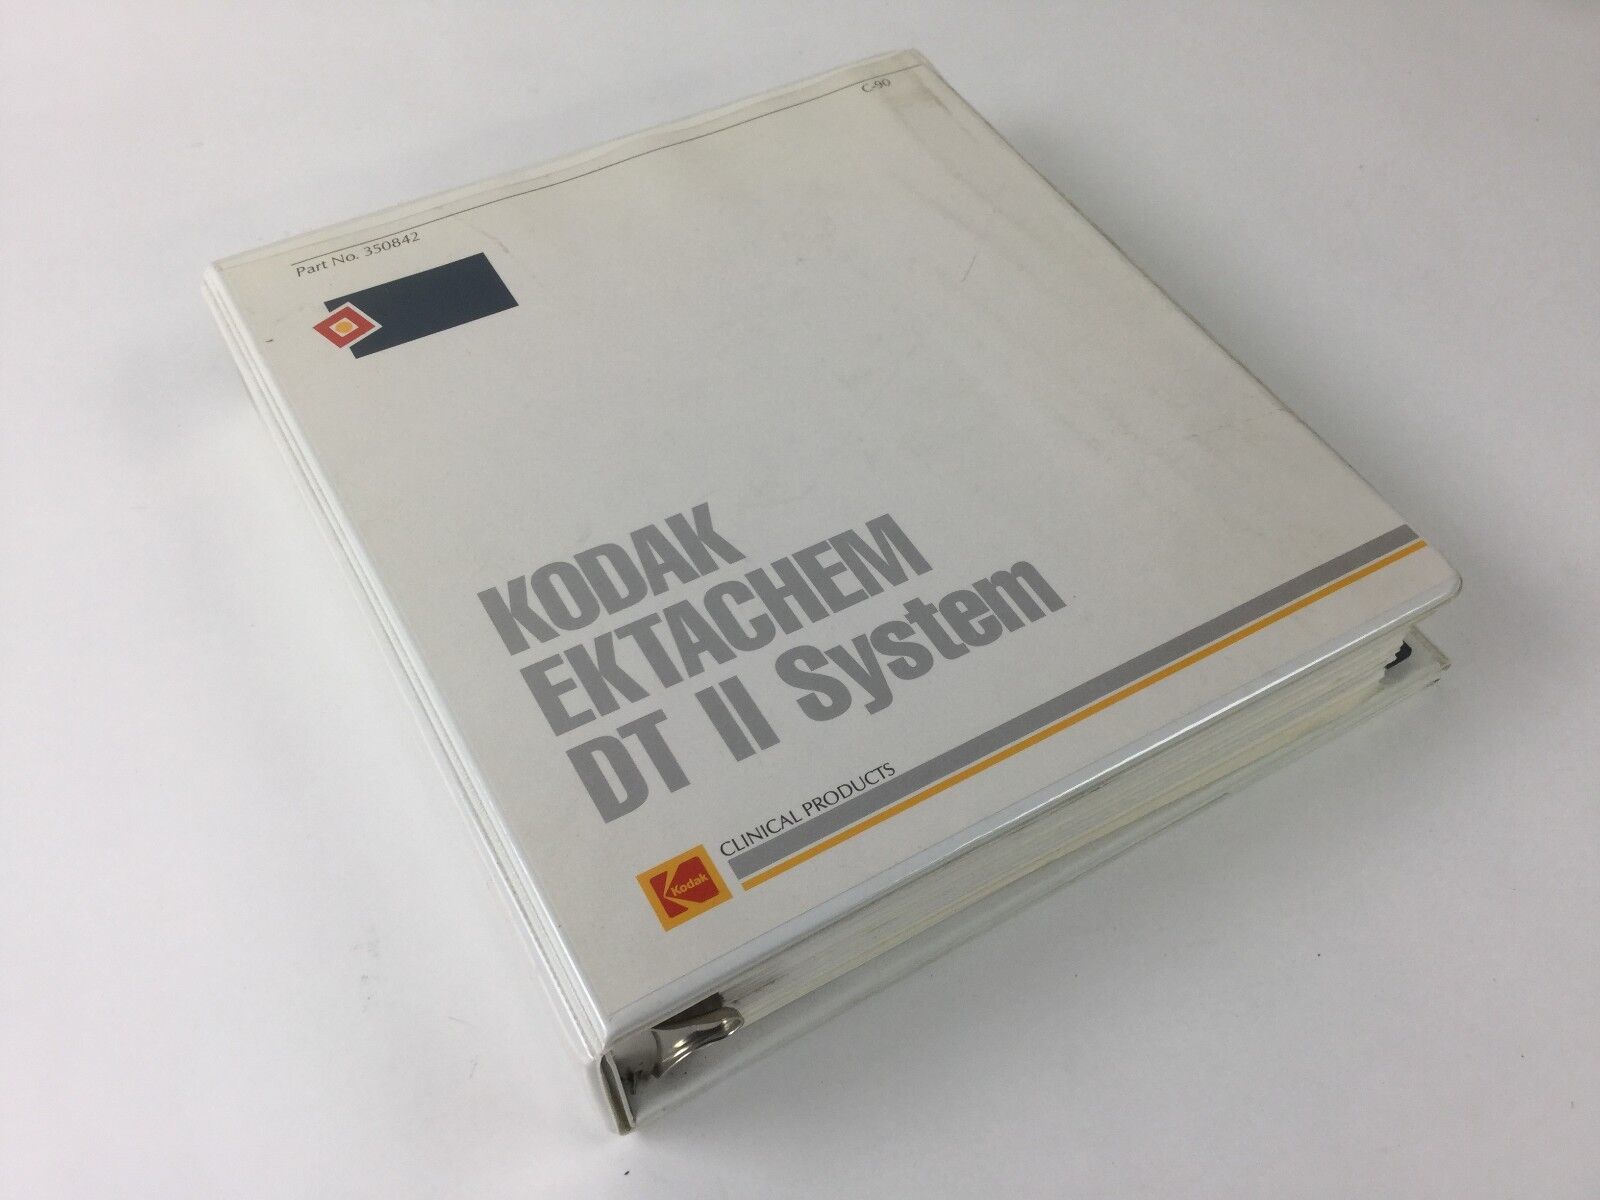 KODAK EKTACHEM DT II Operator's Manual (Binder) C 90